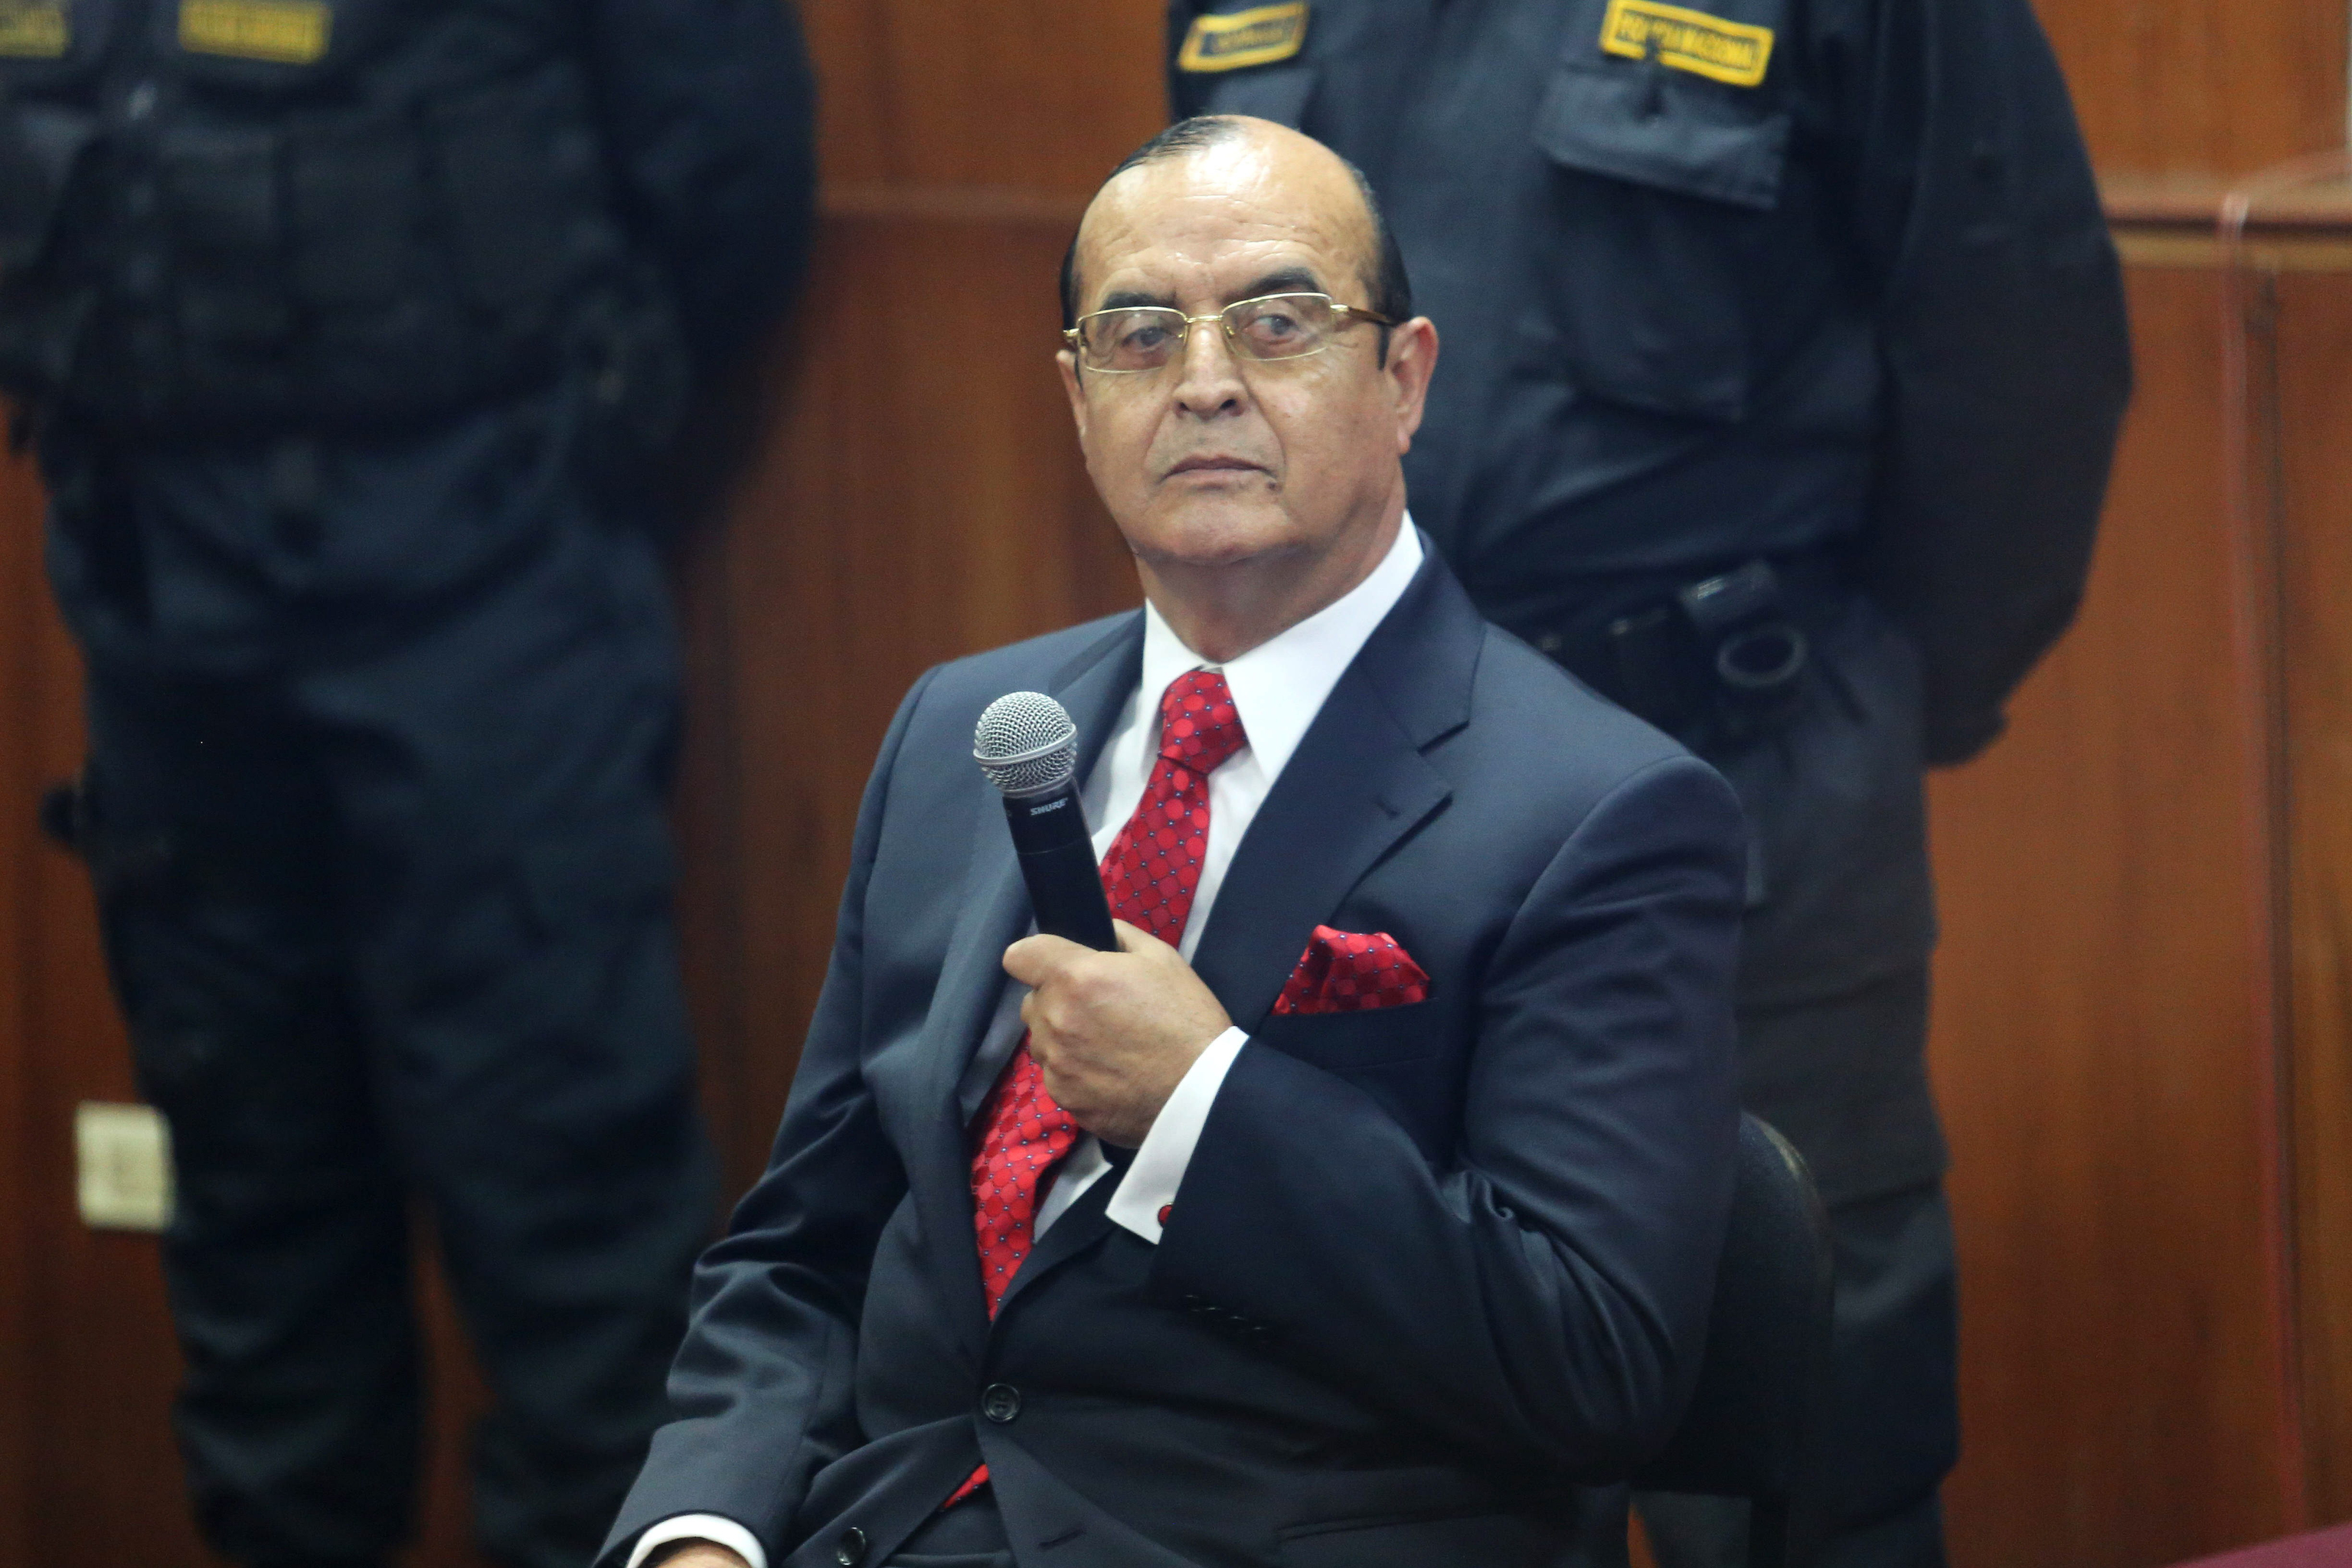 Fotografa de archivo fechada el 6 de junio de 2014 que muestra al exasesor presidencial Vladimiro Montesinos, durante la audiencia de un juicio contra el expresidente peruano  Alberto Fujimori.